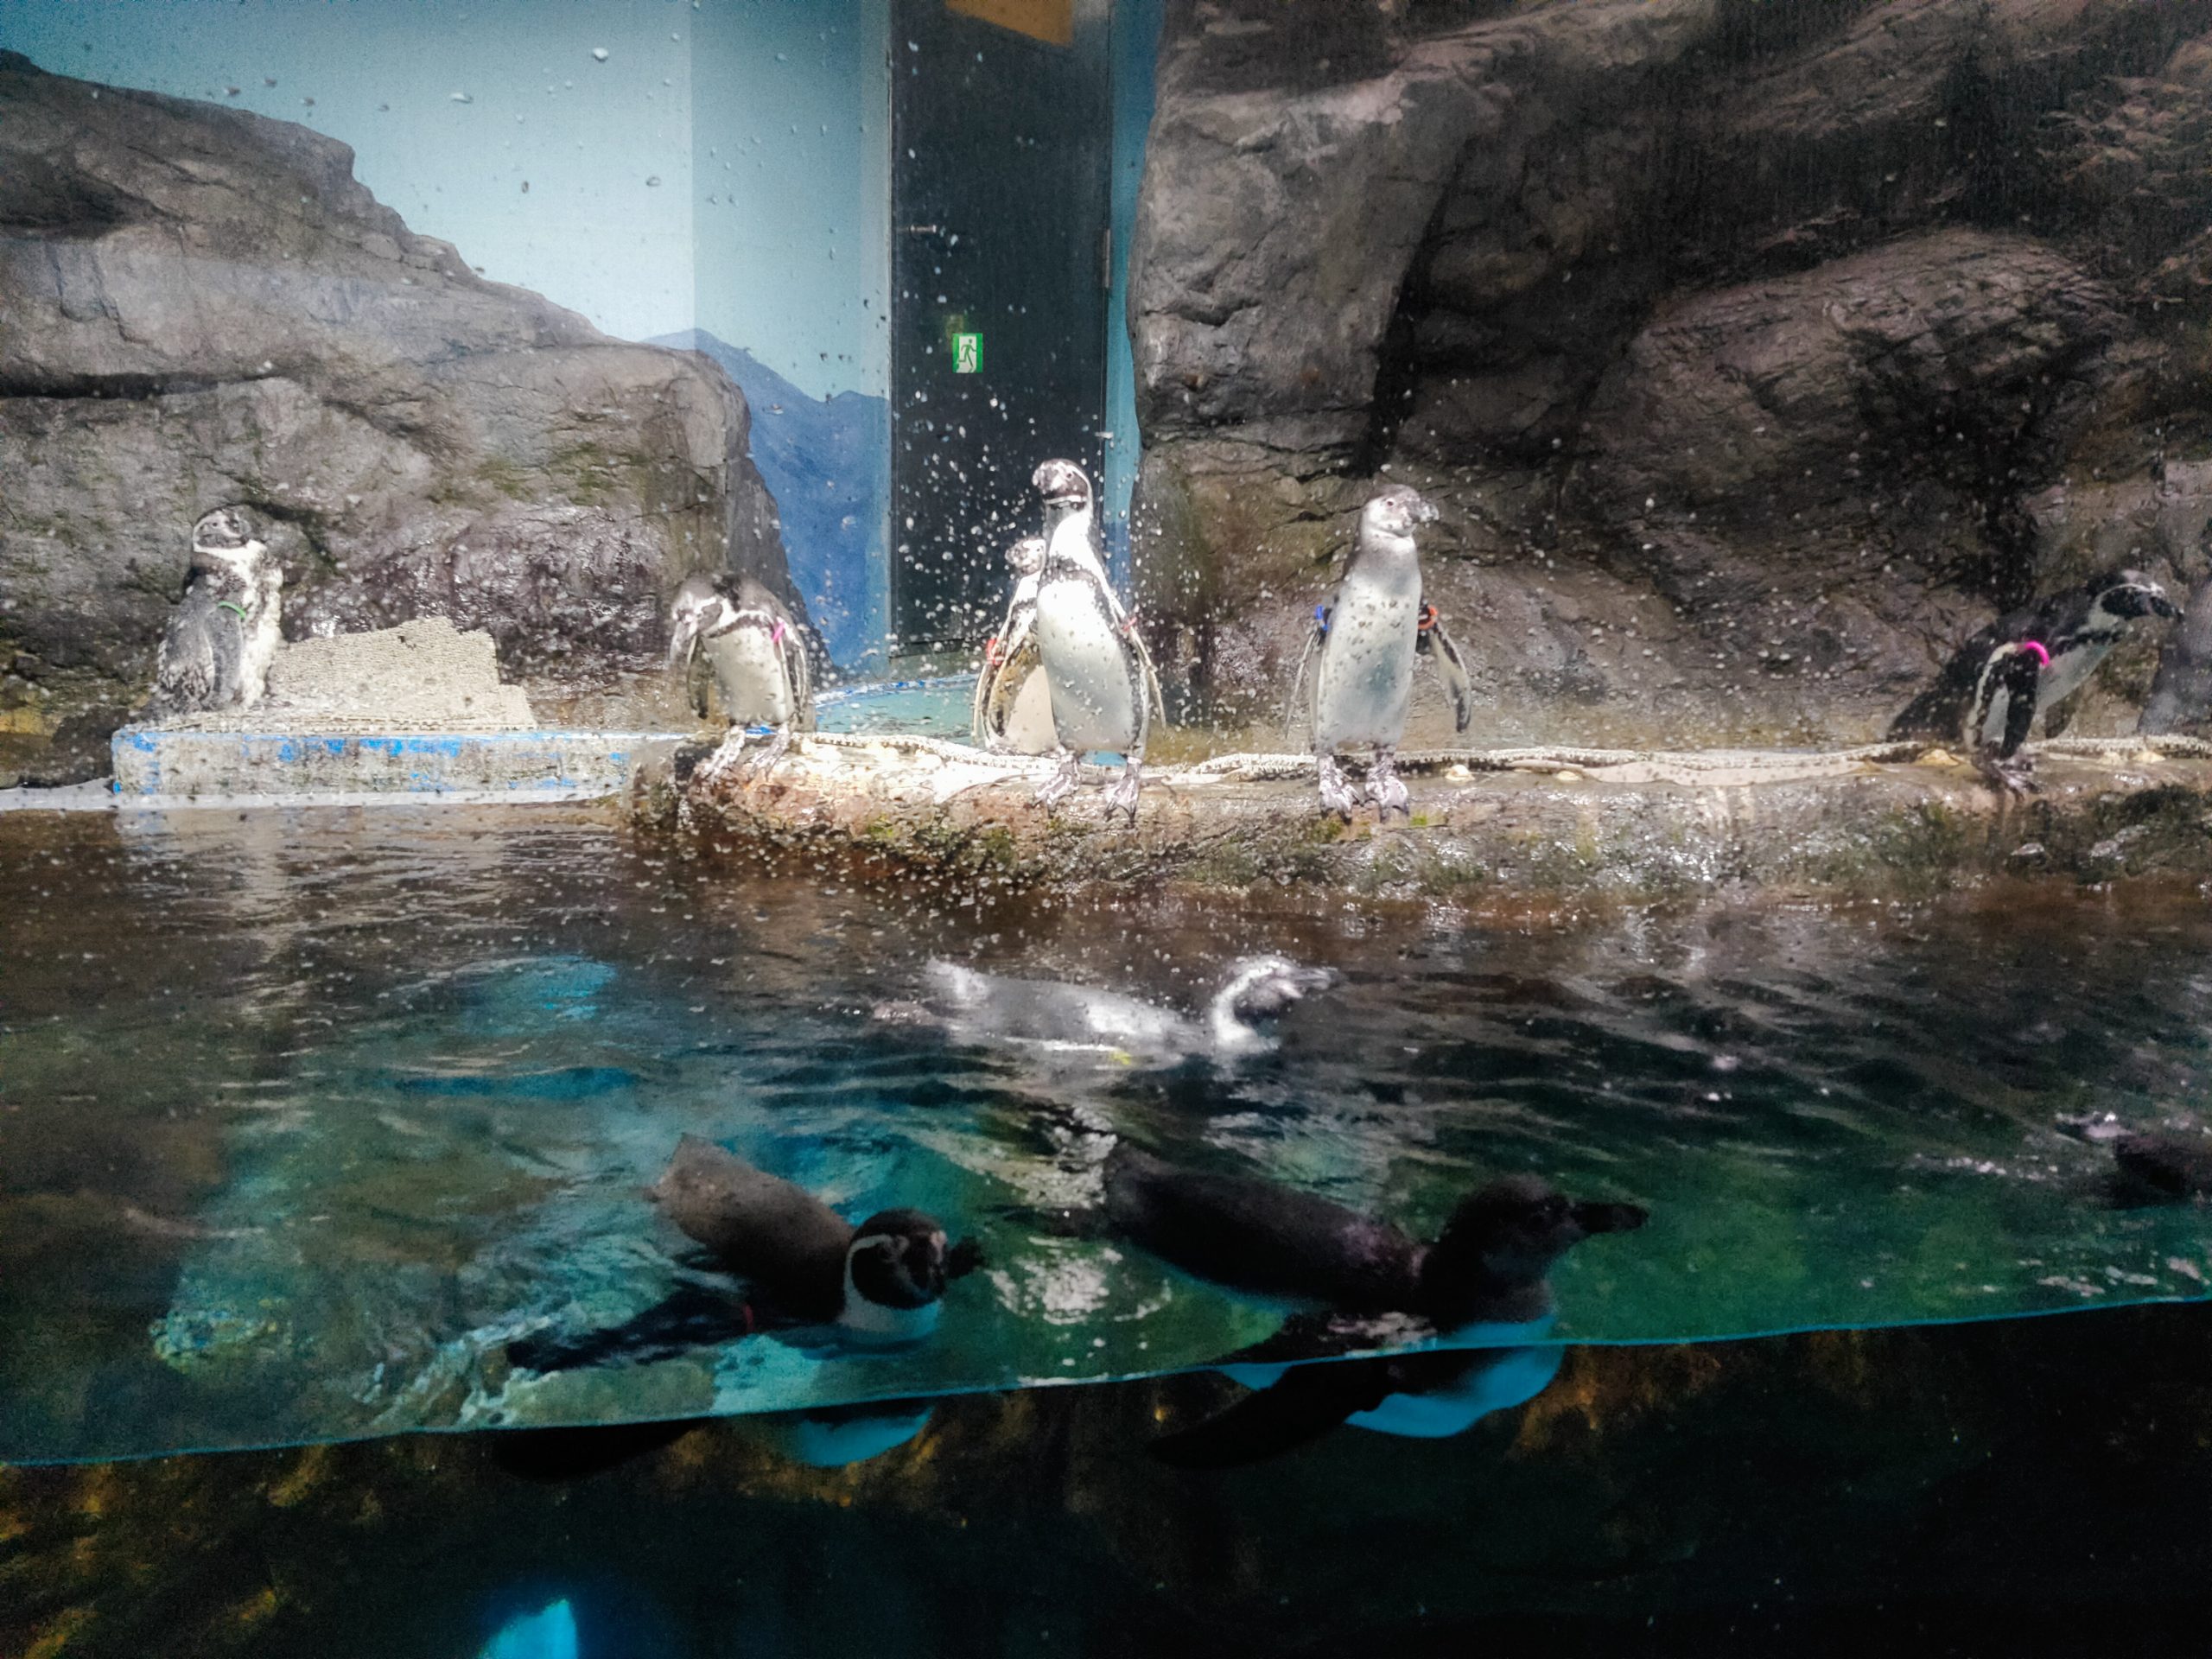 フンボルトペンギン3羽の展示終了について